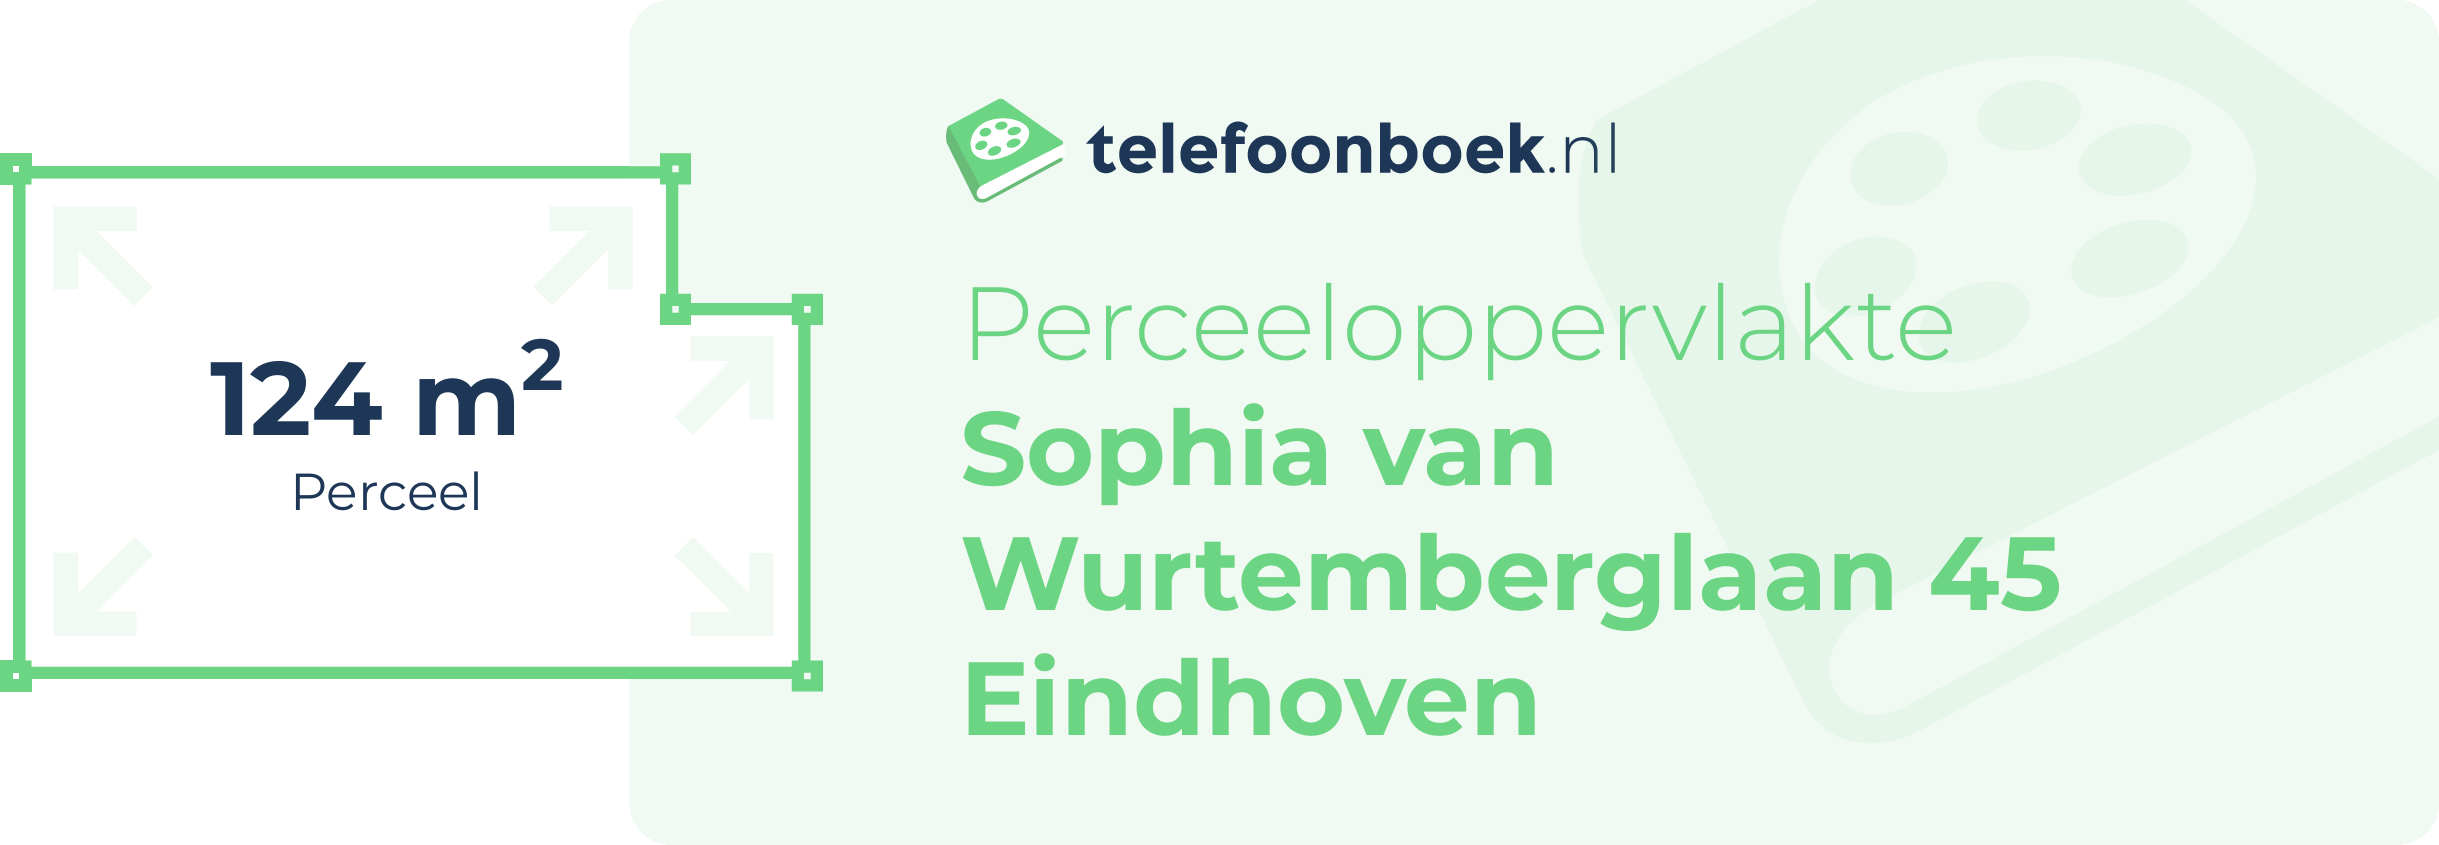 Perceeloppervlakte Sophia Van Wurtemberglaan 45 Eindhoven